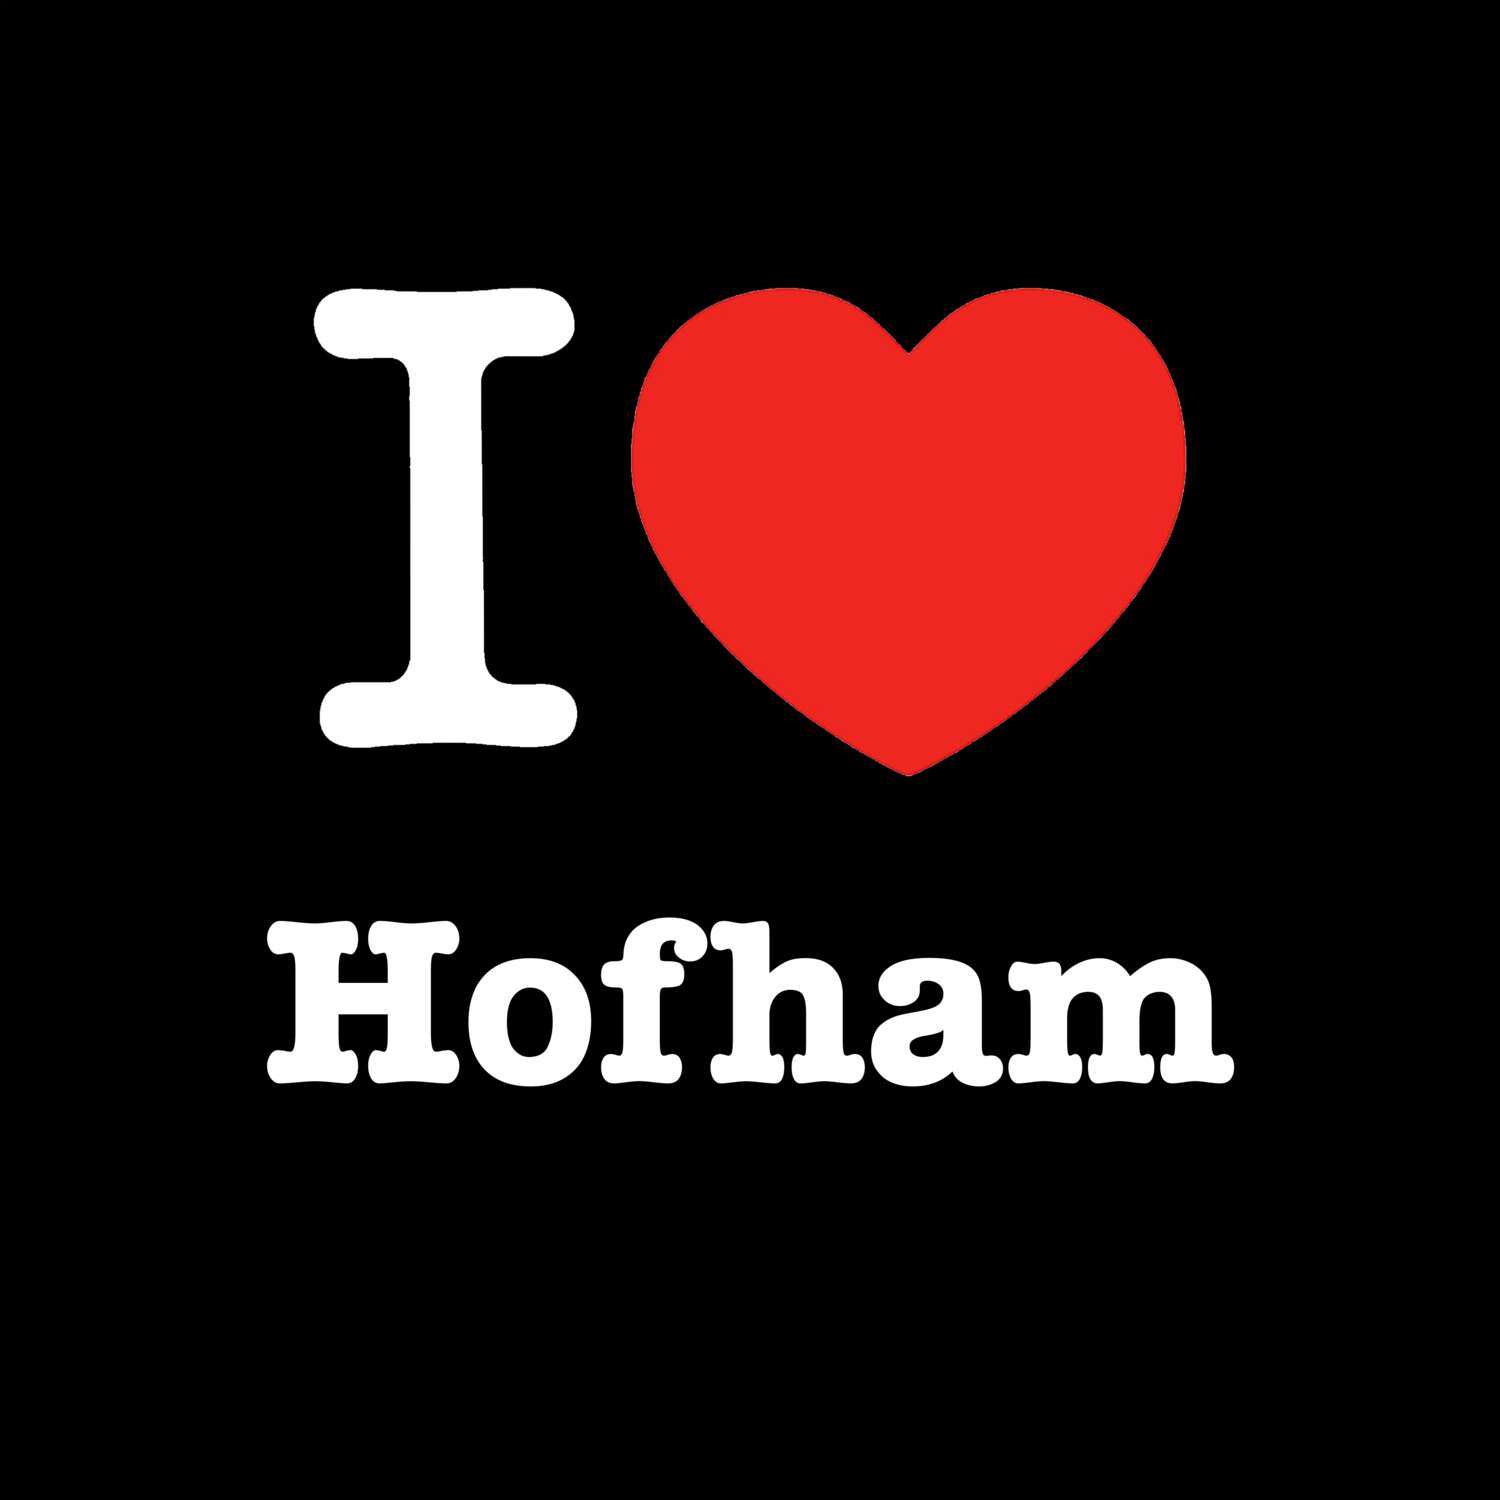 Hofham T-Shirt »I love«